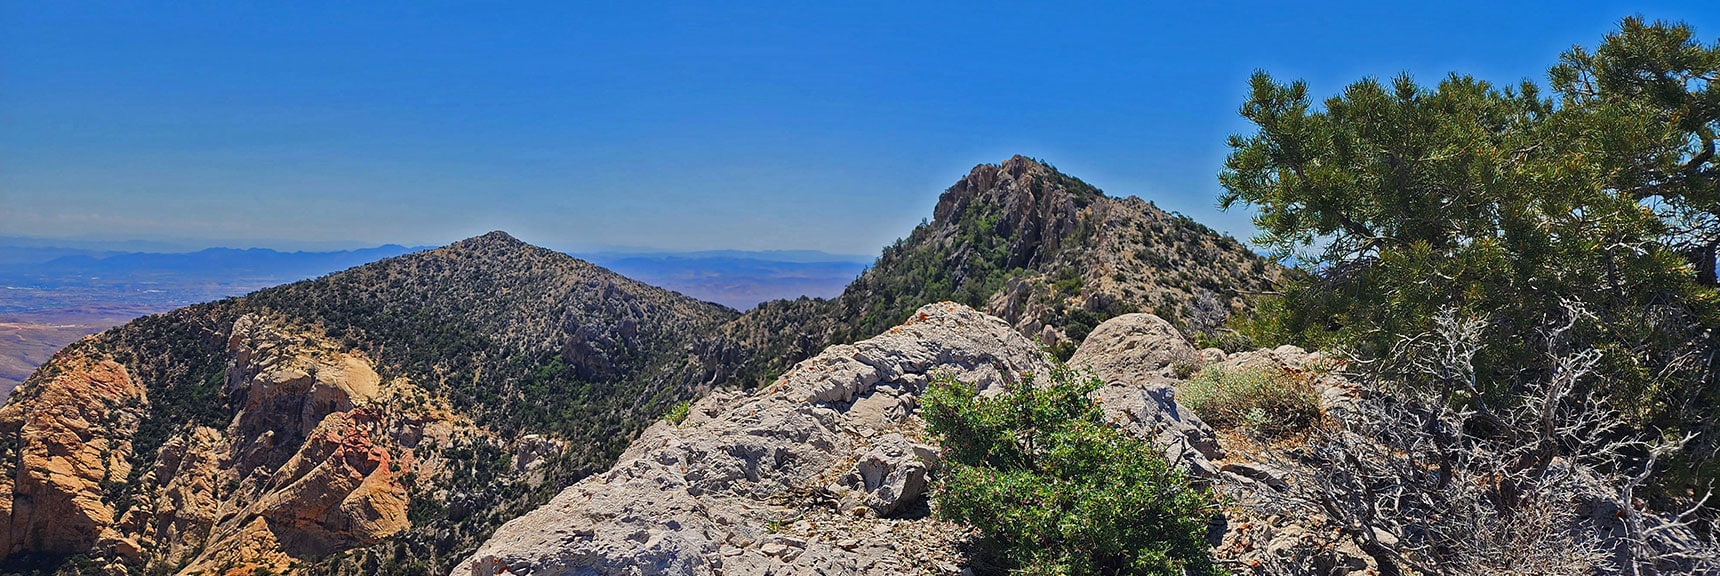 Indecision Peak (left) and Ridgeline High Point Above Indecision (Right) | Mt Wilson to Hidden Peak | Upper Crest Ridgeline | Rainbow Mountain Wilderness, Nevada